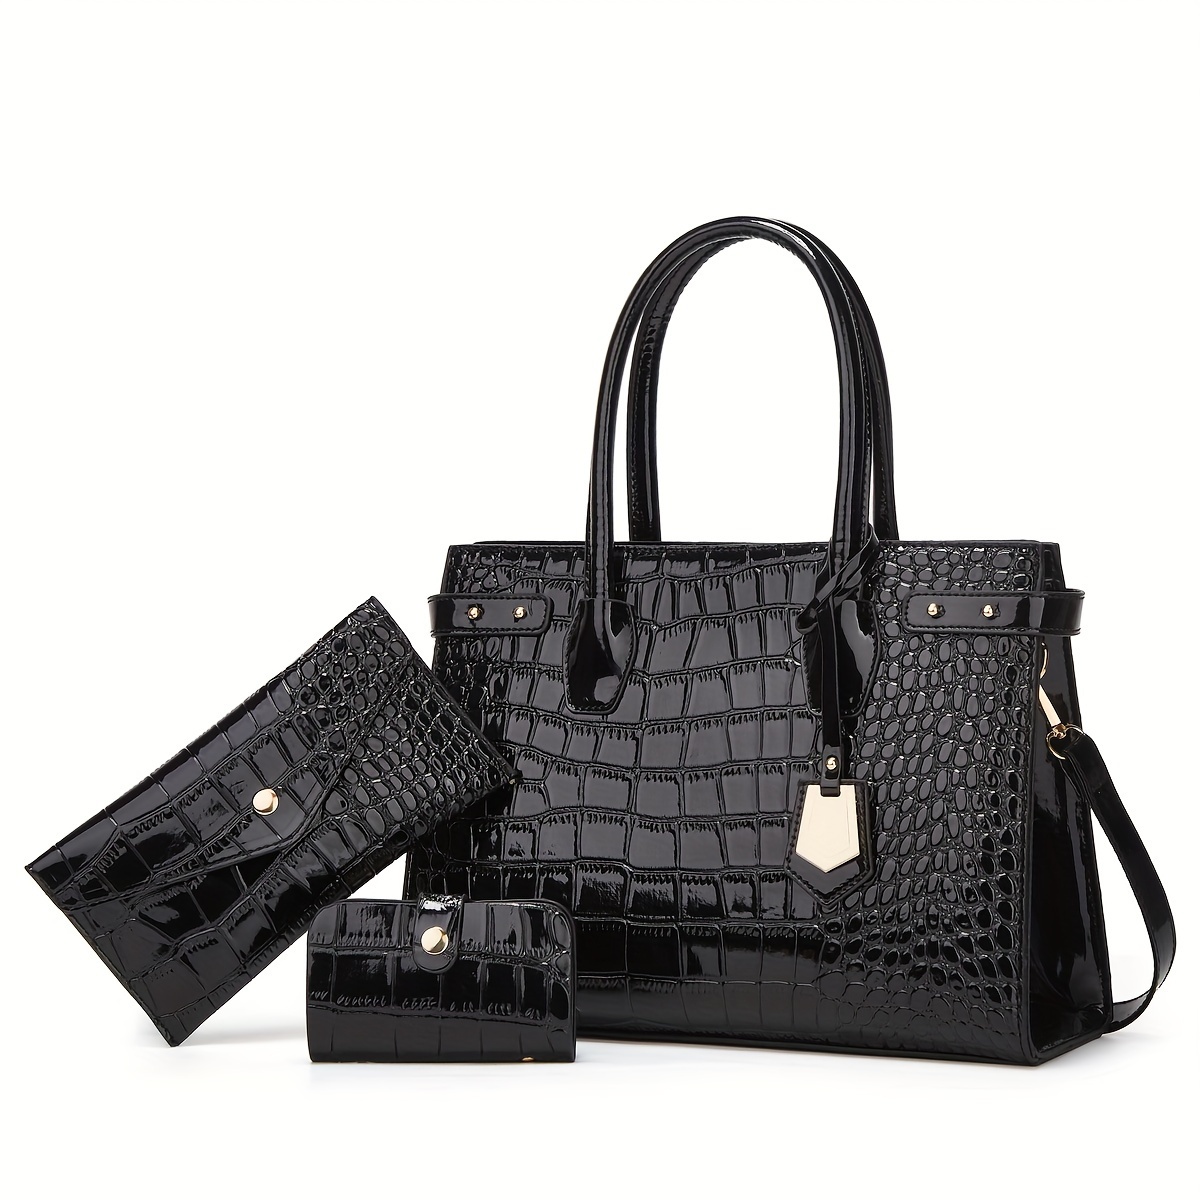 Black Crocodile Embossed Handbag Large Capacity Zipper Tote - Temu